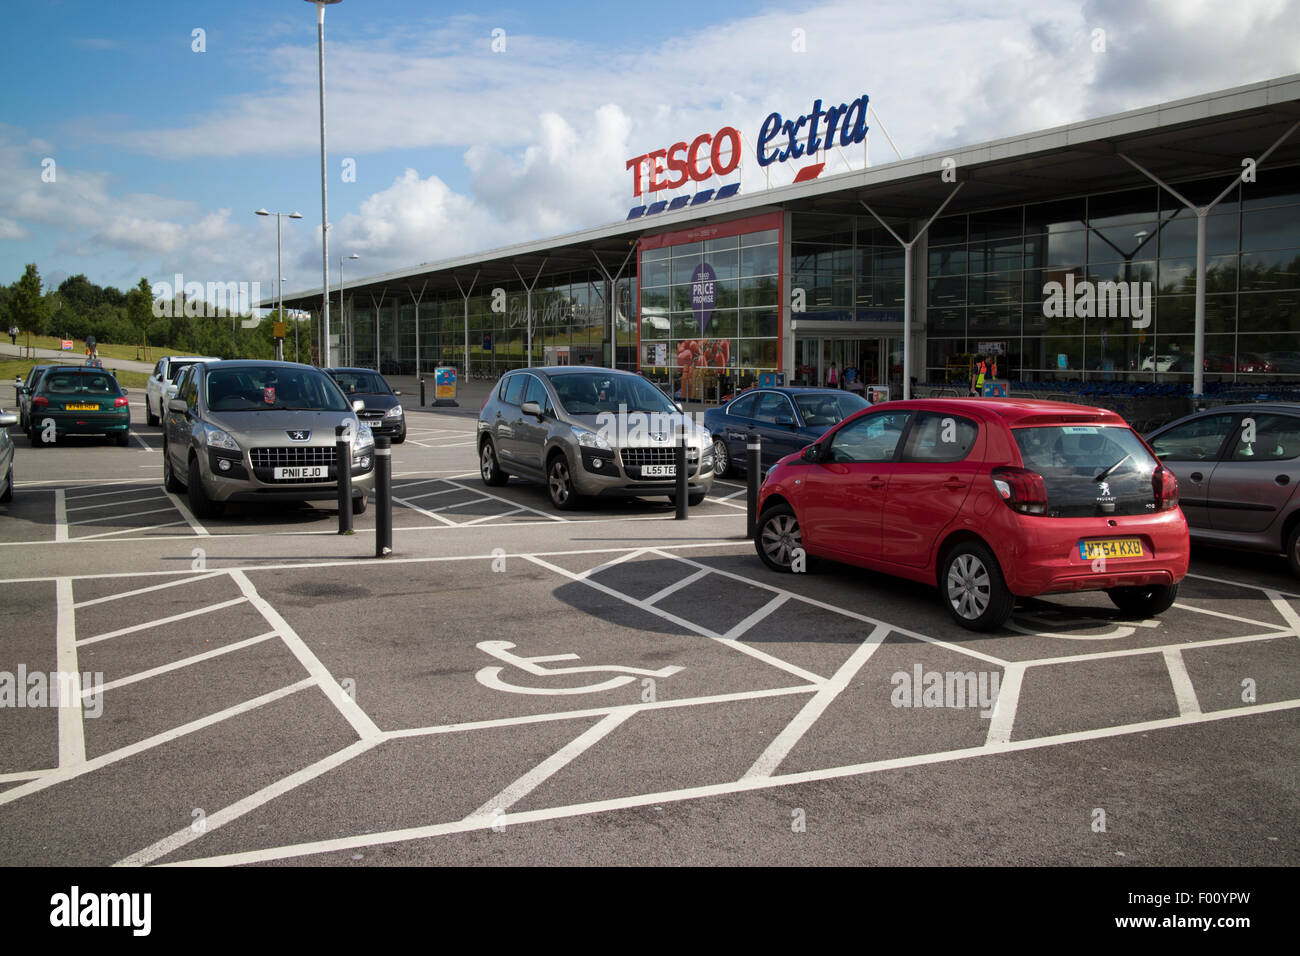 Parking voiture mobilité de tesco superstore supplémentaire à St Helens uk Banque D'Images